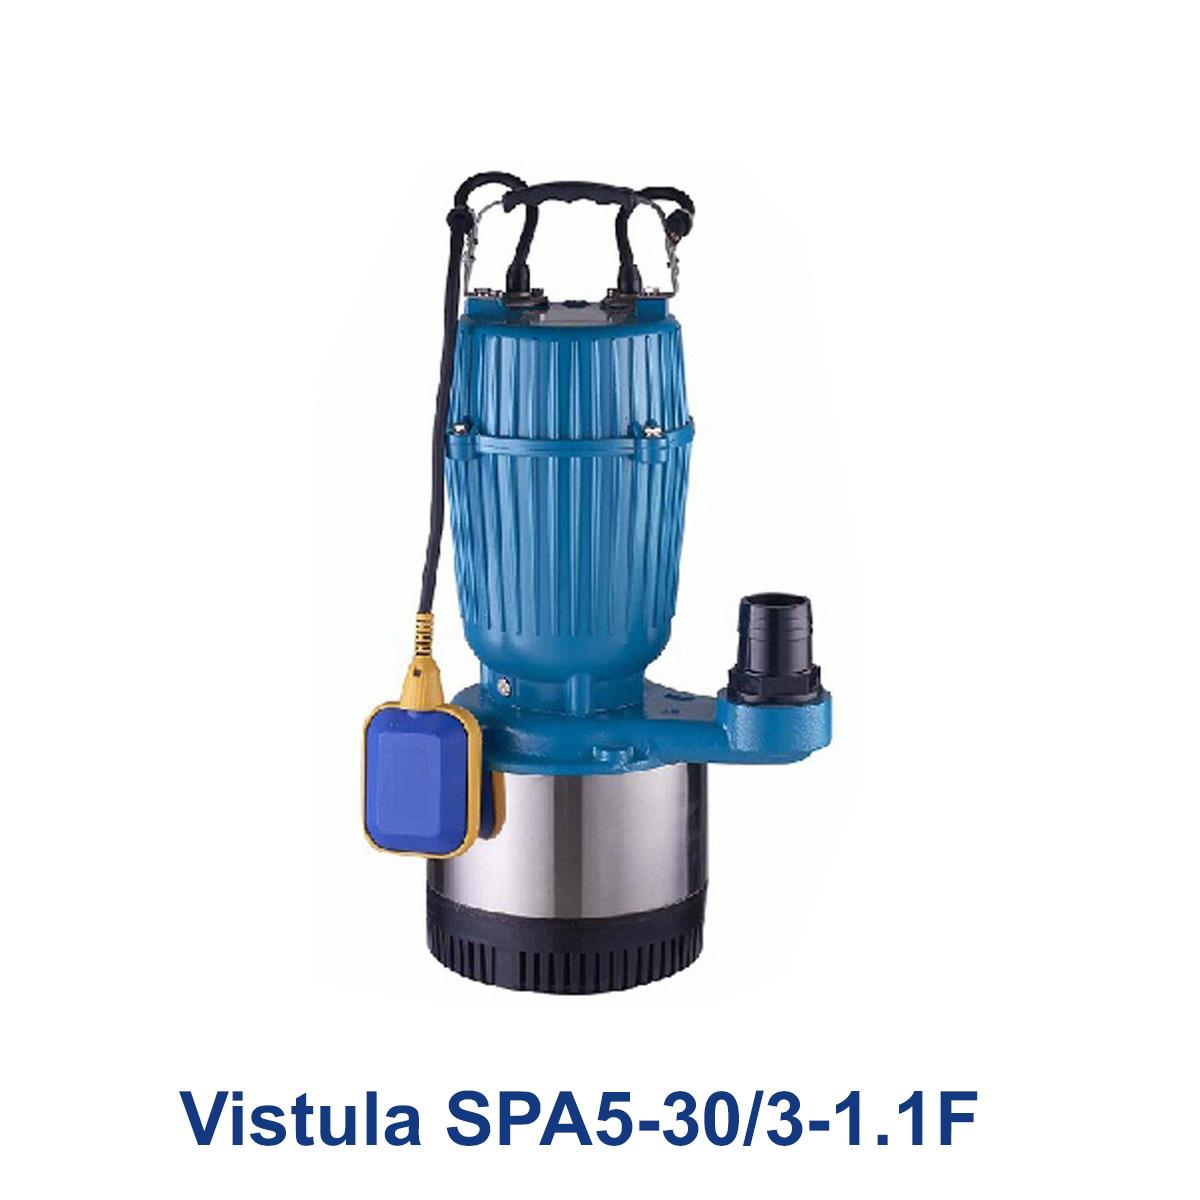 Vistula-SPA5-30-3-1.1F